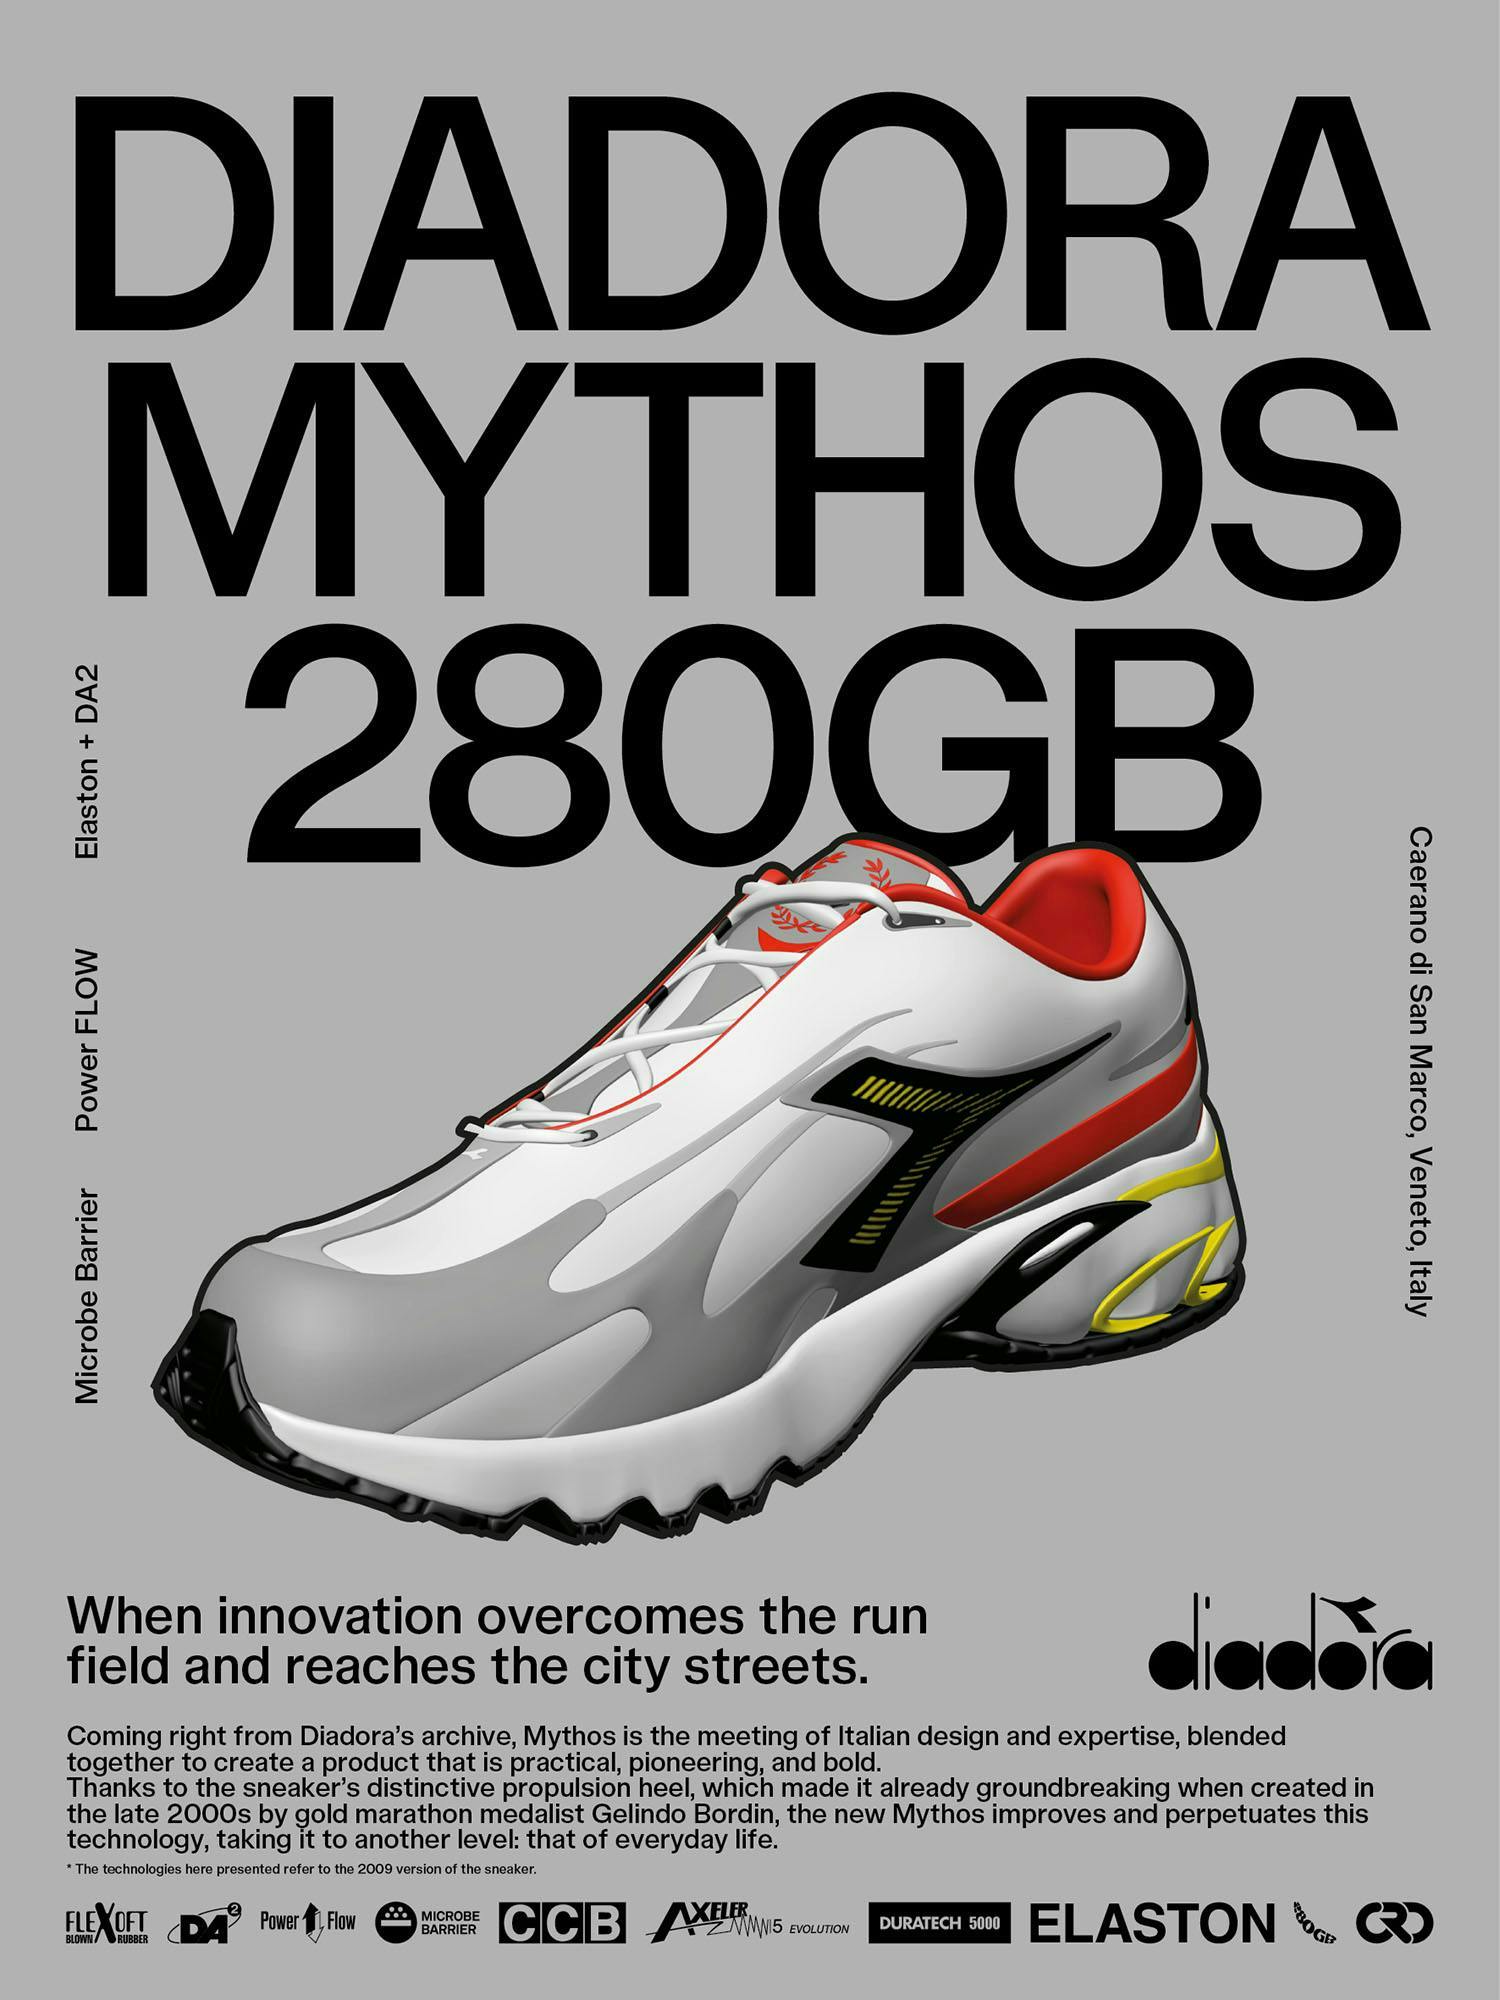 Il poster di presentazione delle nuove Diadora Mythos 280GB (Courtesy Diadora)